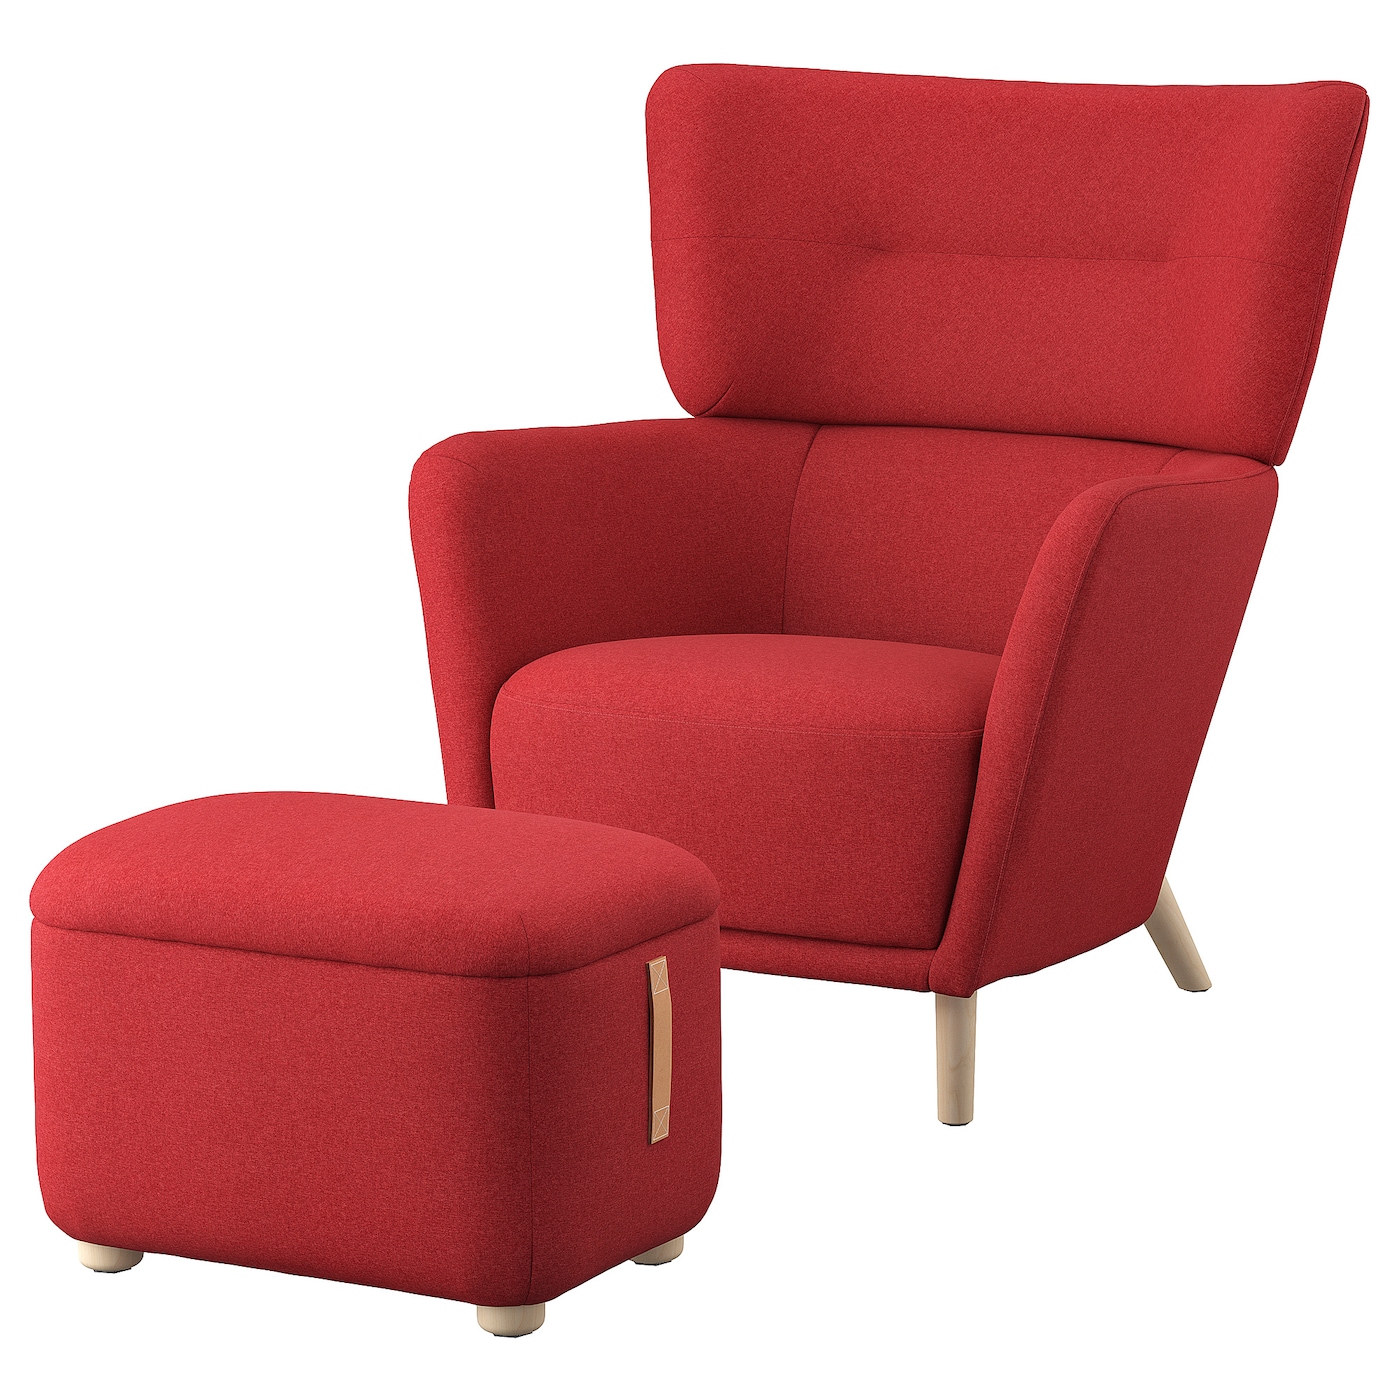 ОСКАРШАМН Кресло и подставка для ног, Тонеруд красный OSKARSHAMN IKEA